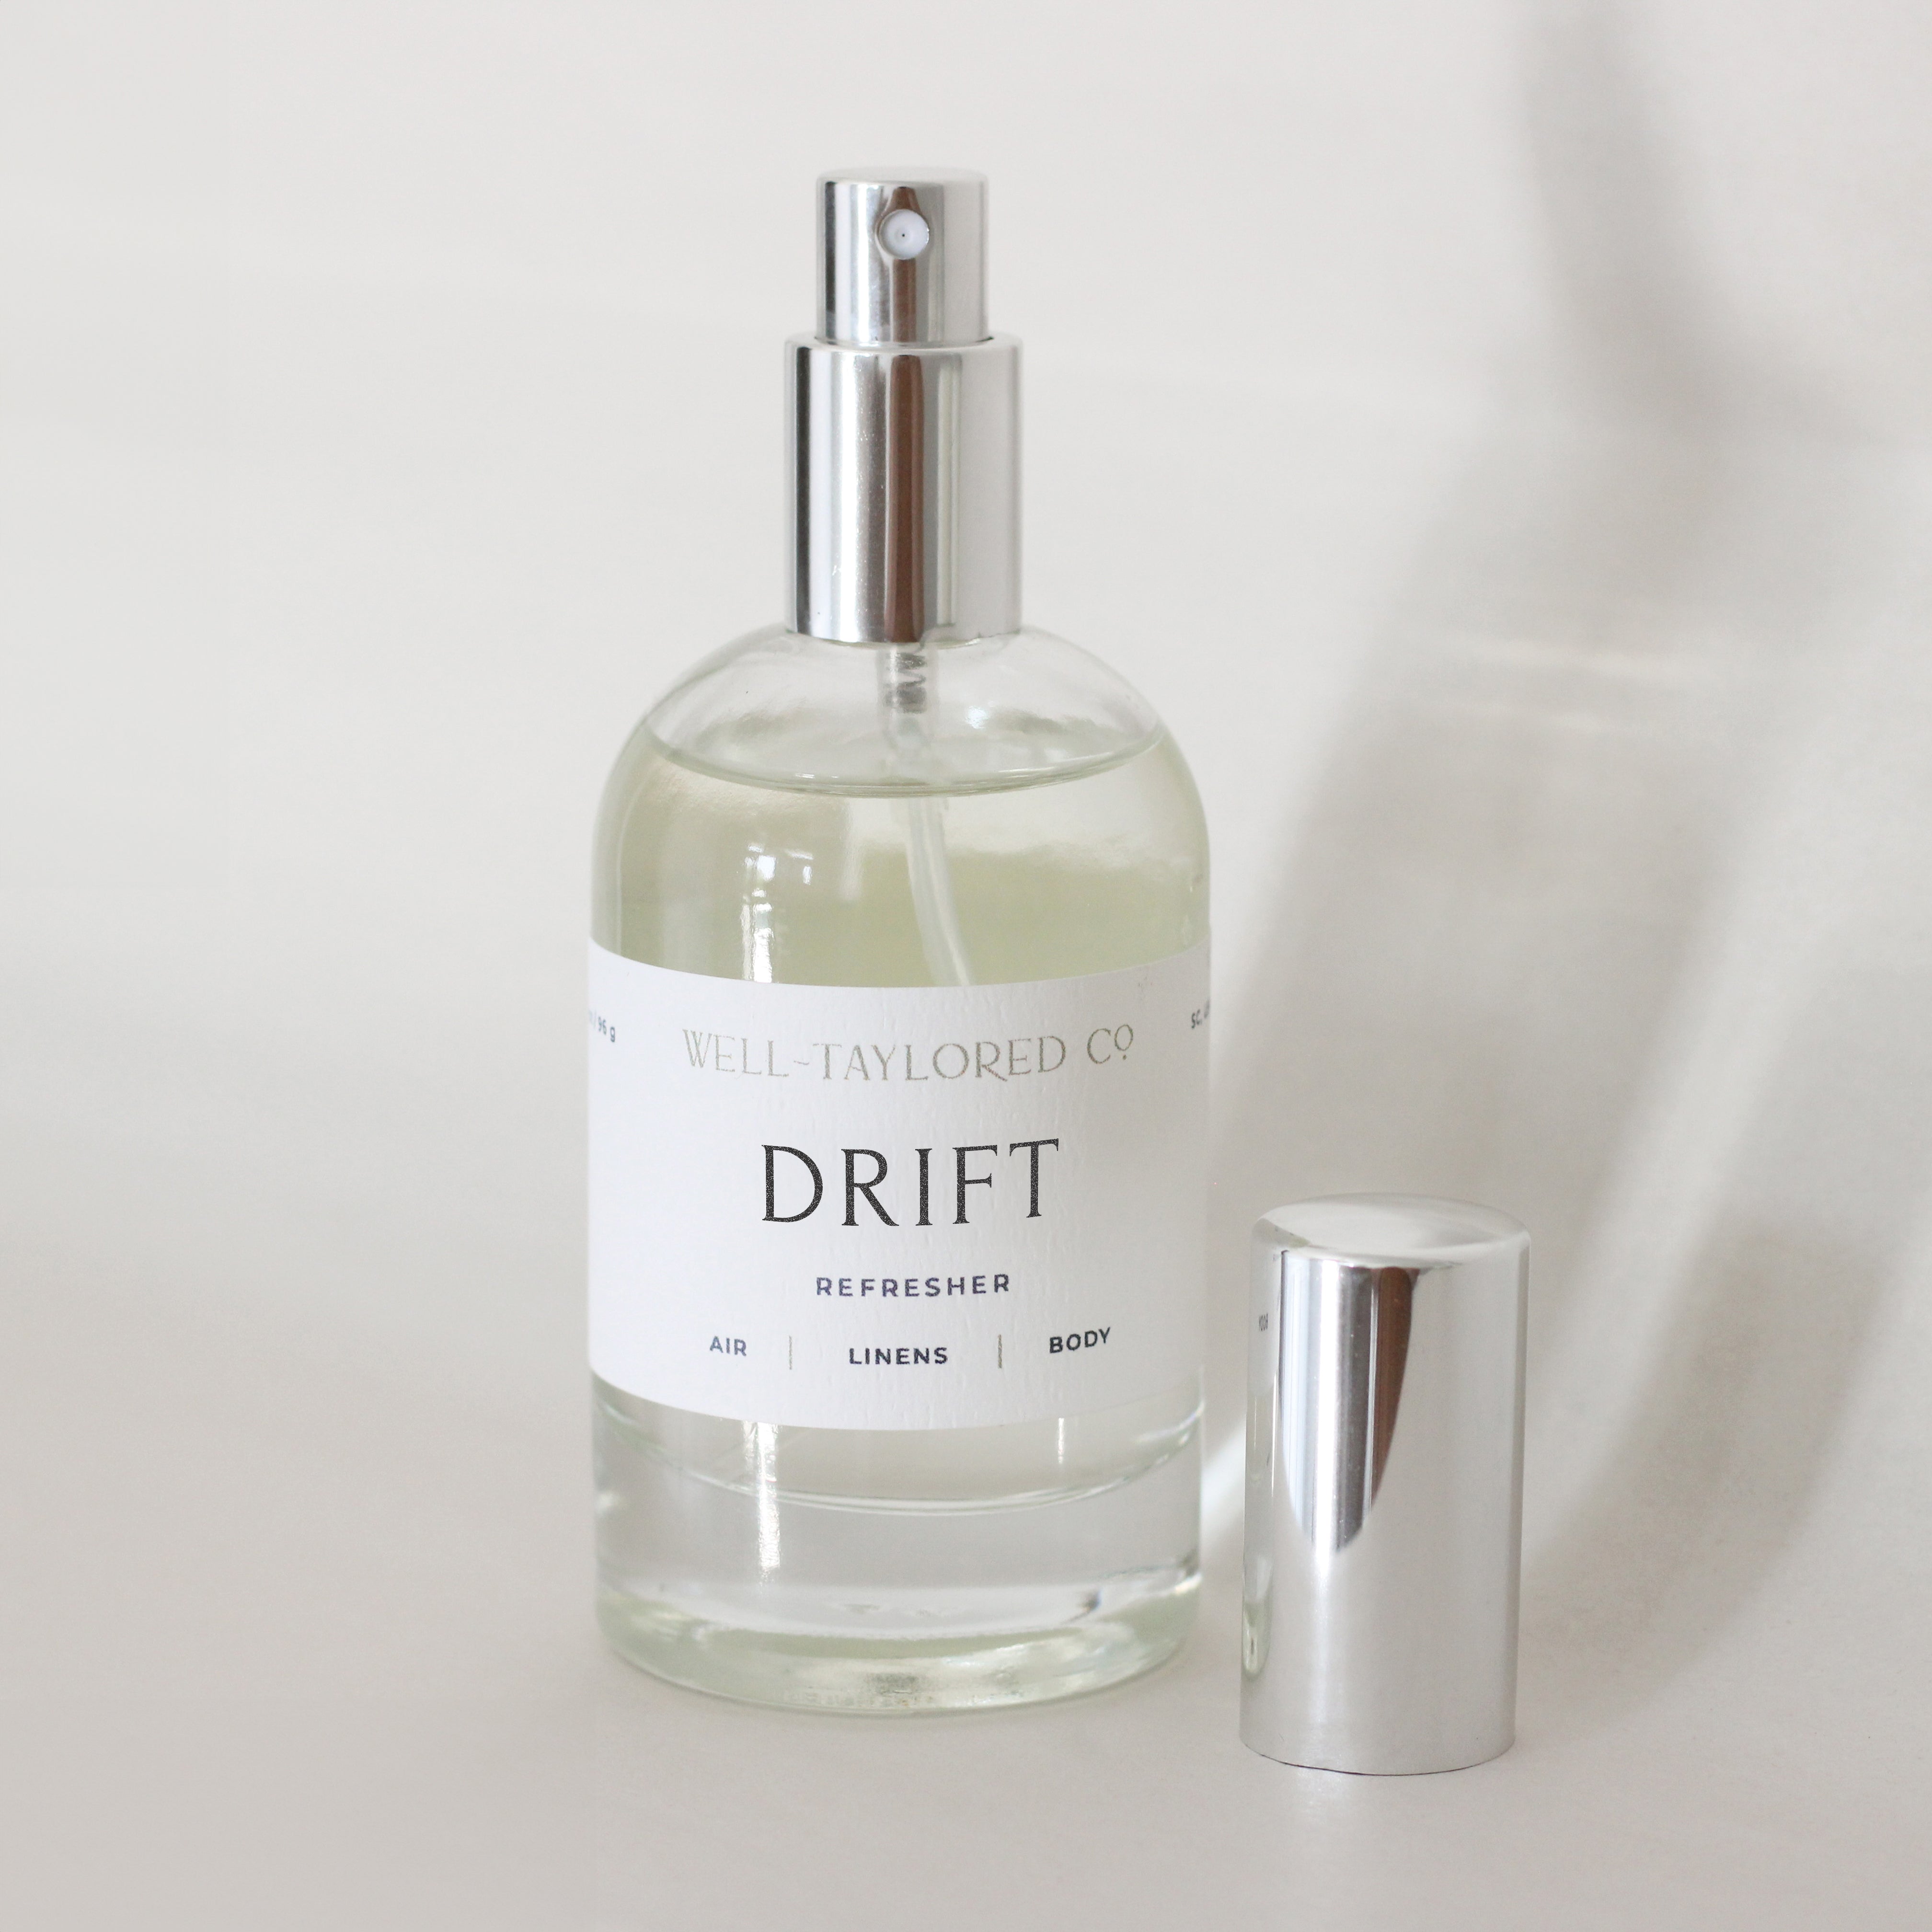 Drift Air & Linen Refresher | Well-Taylored Co.